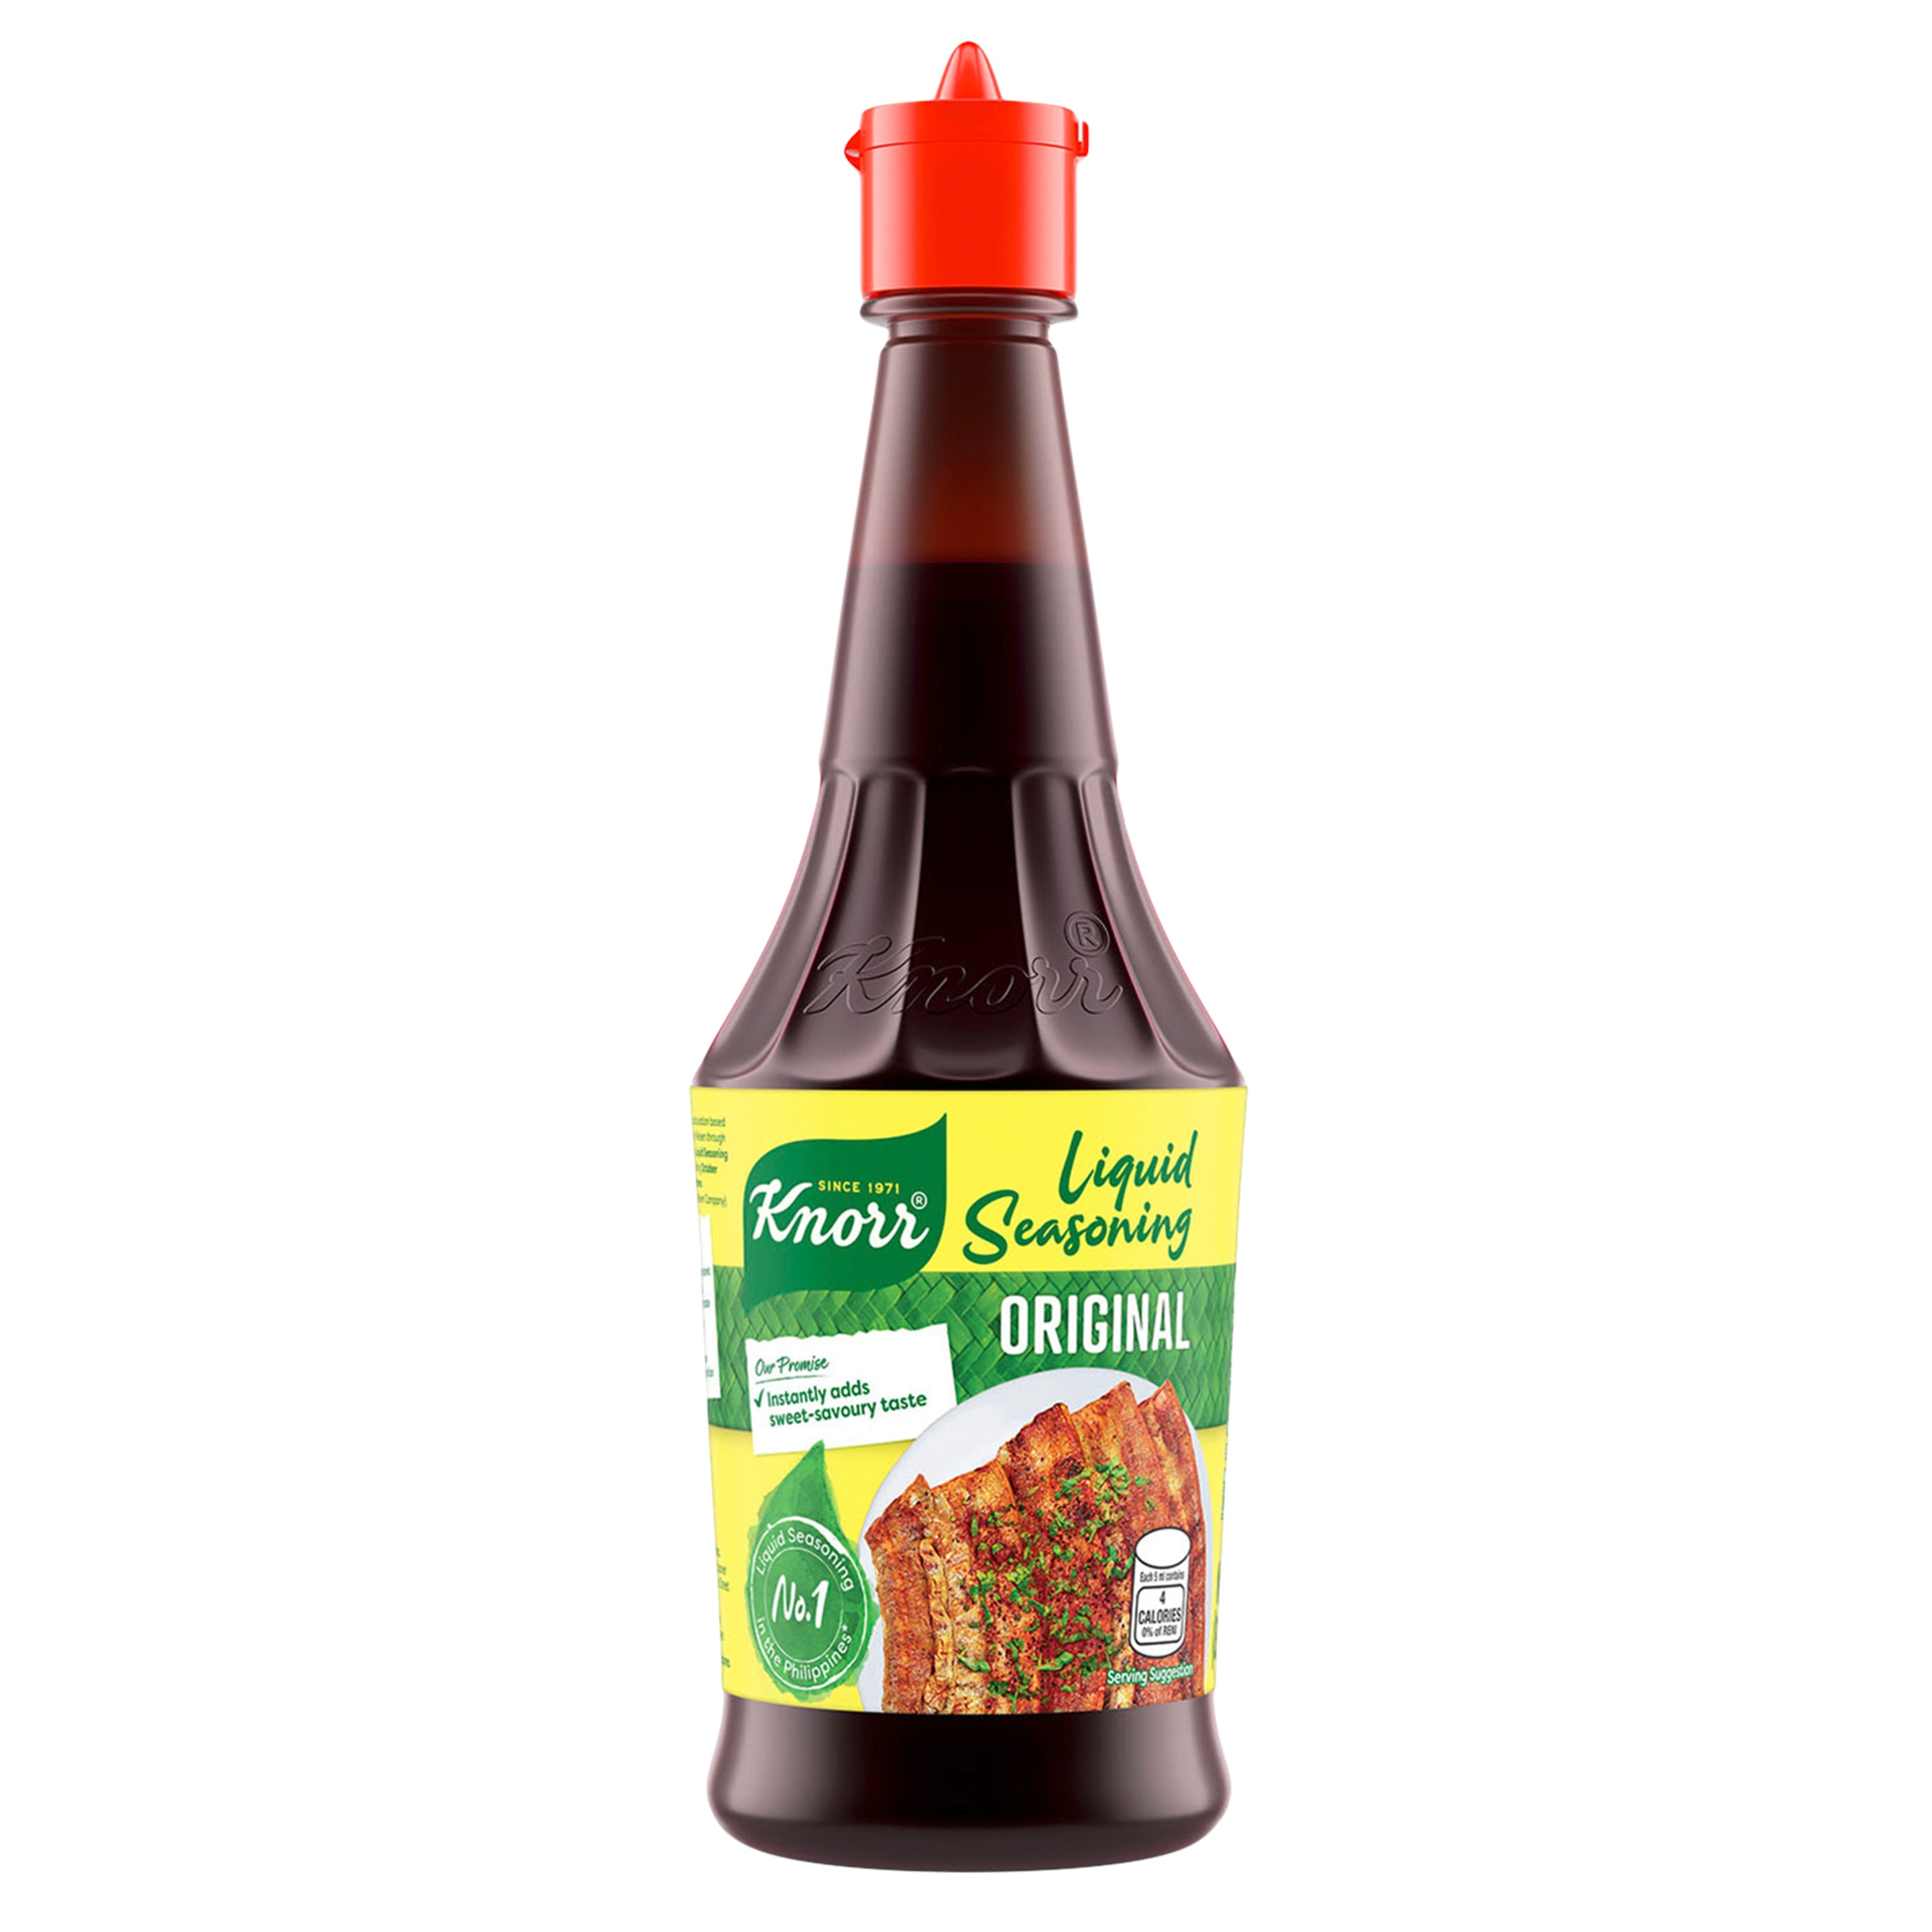 A bottle of Original Knorr Liquid Seasoning